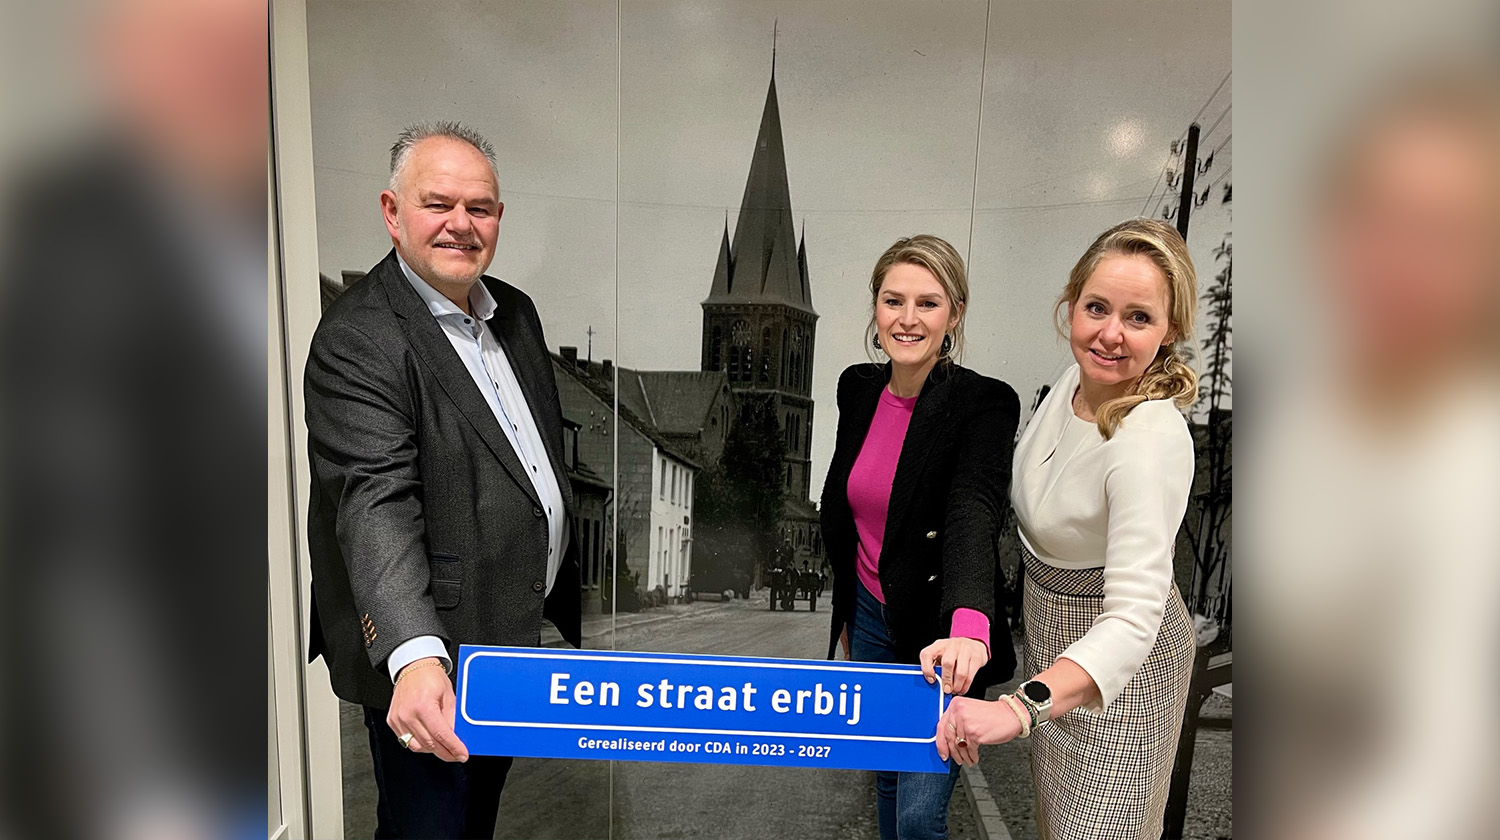 CDA Limburg: “Anche nei piccoli centri di Nederweert servono più alloggi!”